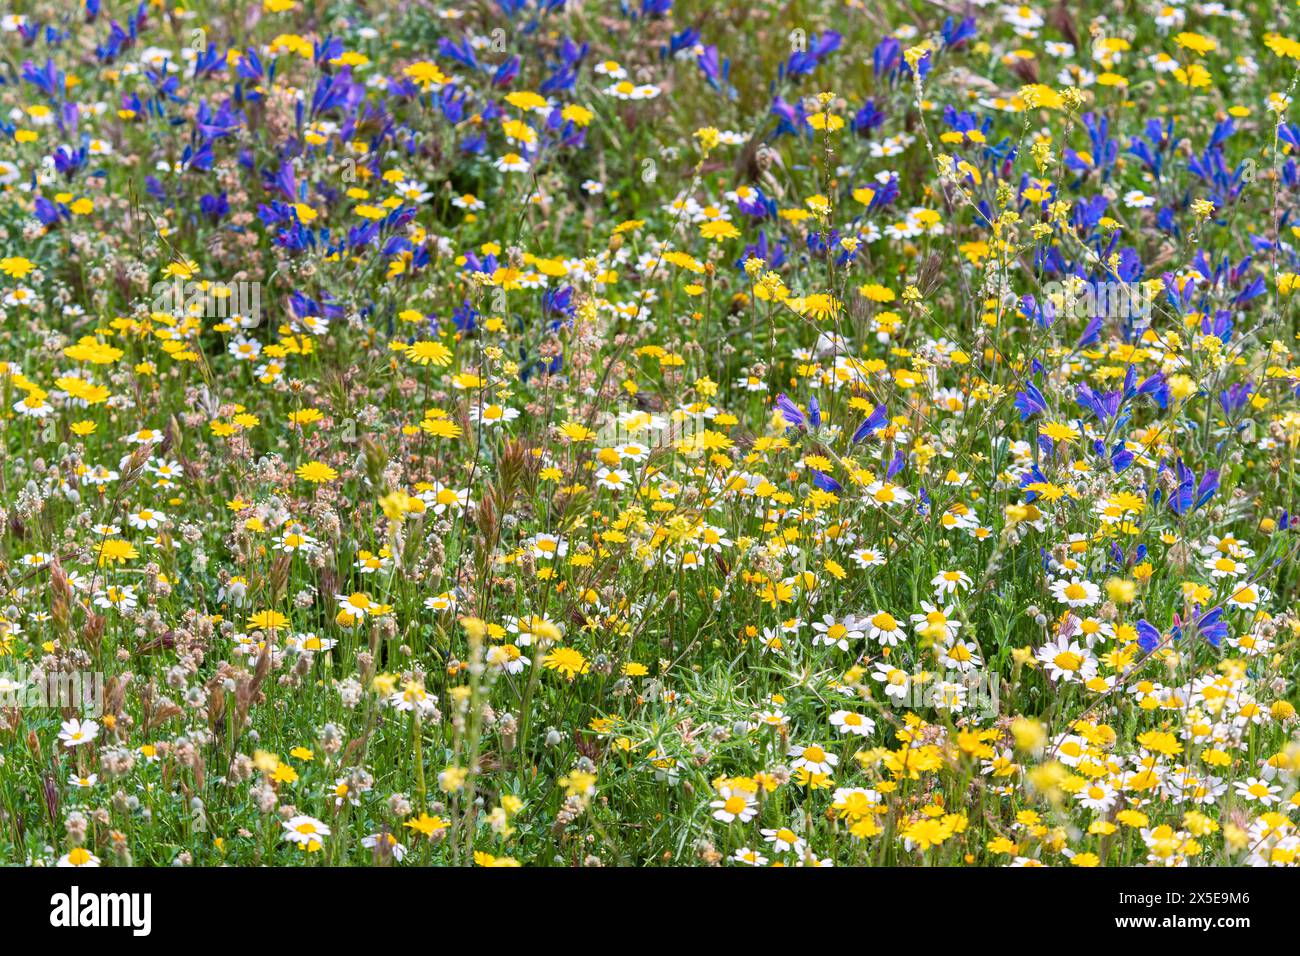 Campo lleno de vegetación y múltiples flores silvestres de diversos colores en primavera Stock Photo